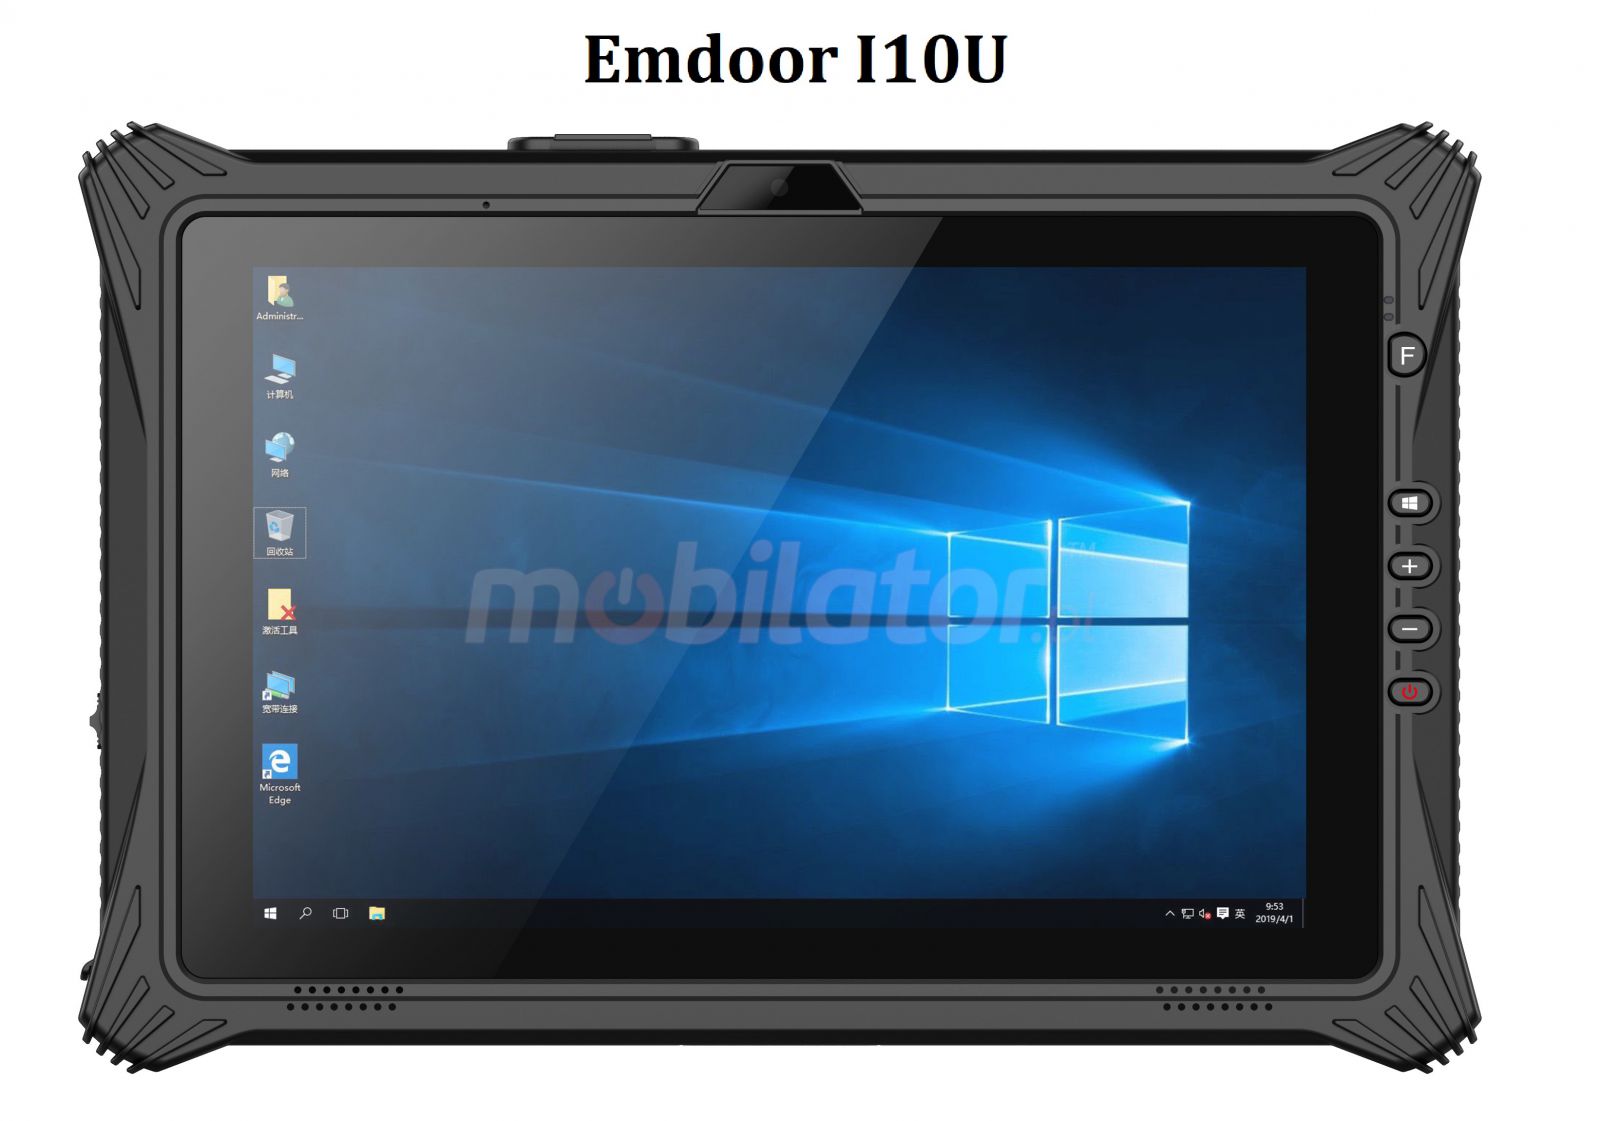 Wodoodporny 10.1-calowy tablet z procesorem Intel I7, z NFC, skanerem kodw kreskowych 2D, pamici 16GB RAM, Windows 10 PRO, Bluetooth 4.2 - Emdoor I10U v.16